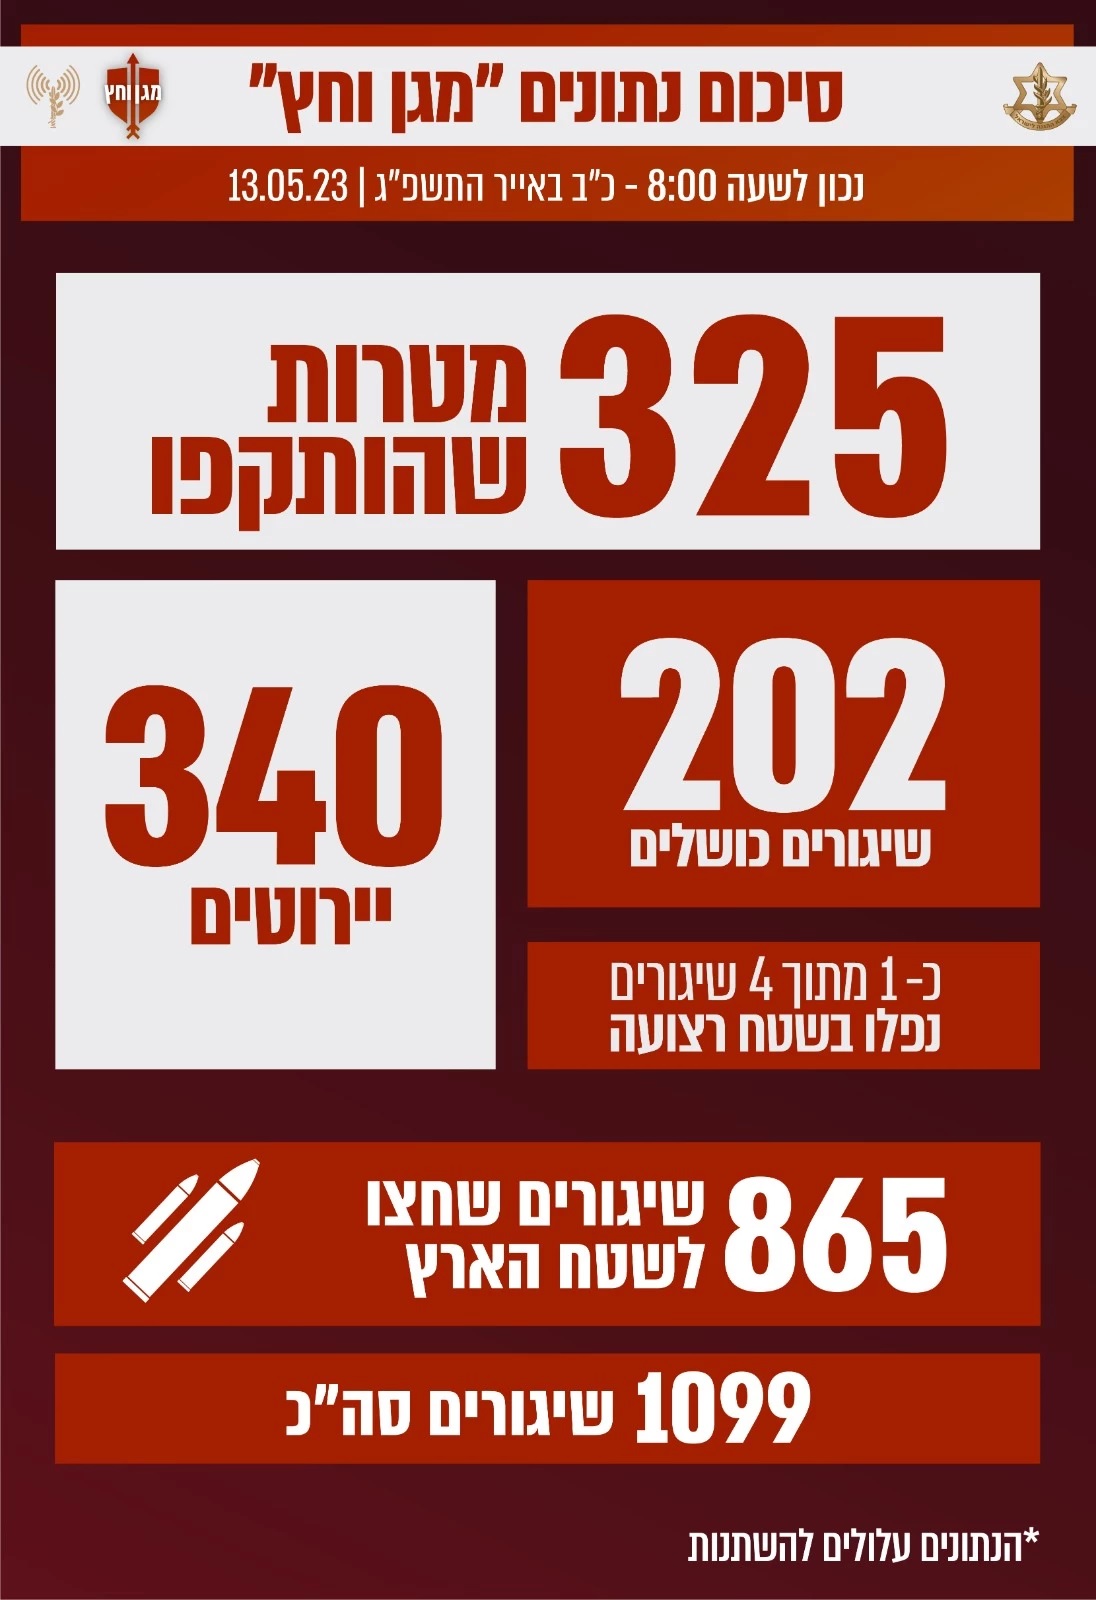 أرقام نشرها الجيش الإسرائيلي على موقعه الإلكتروني الرسمي عن عدد الصواريخ التي أطلقت من غزة 